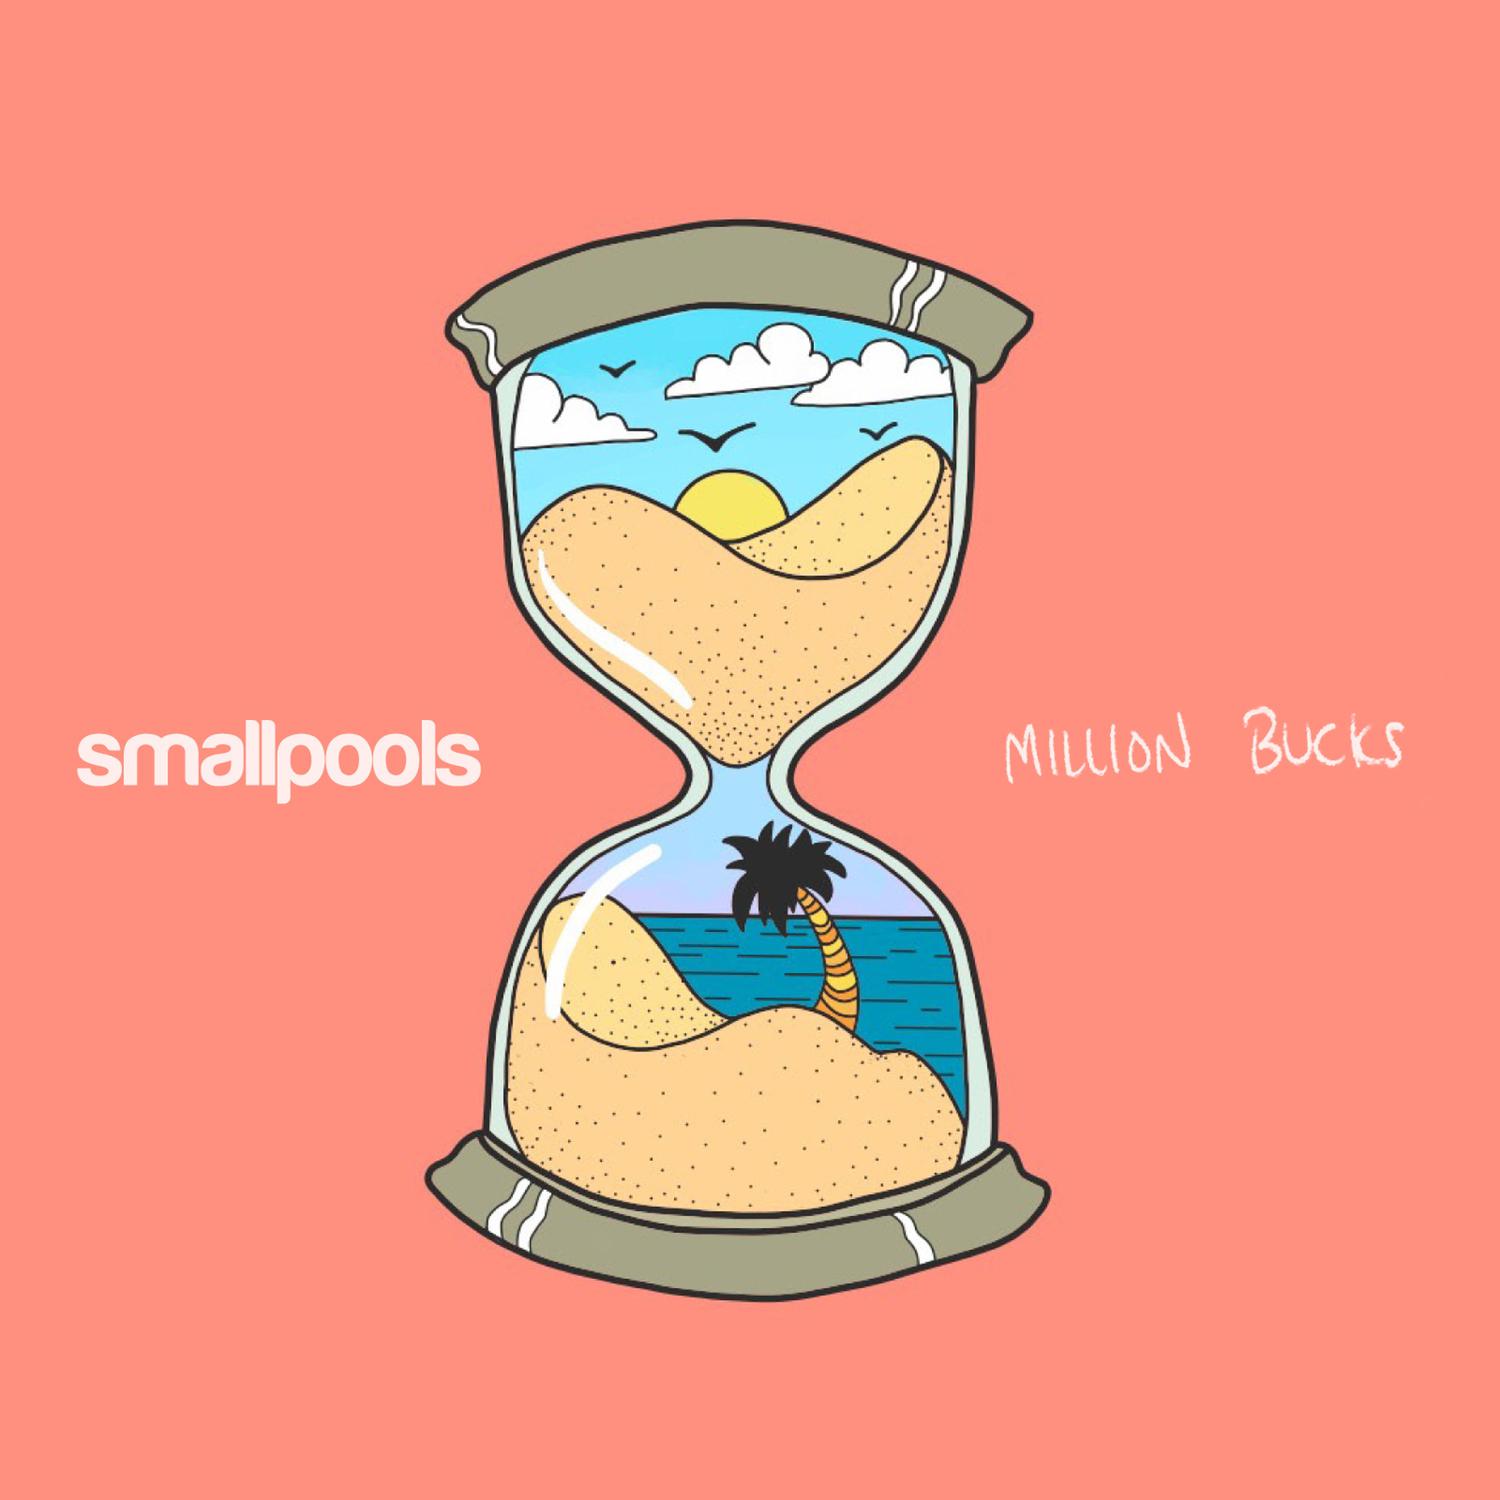 Smallpools - Million Bucks